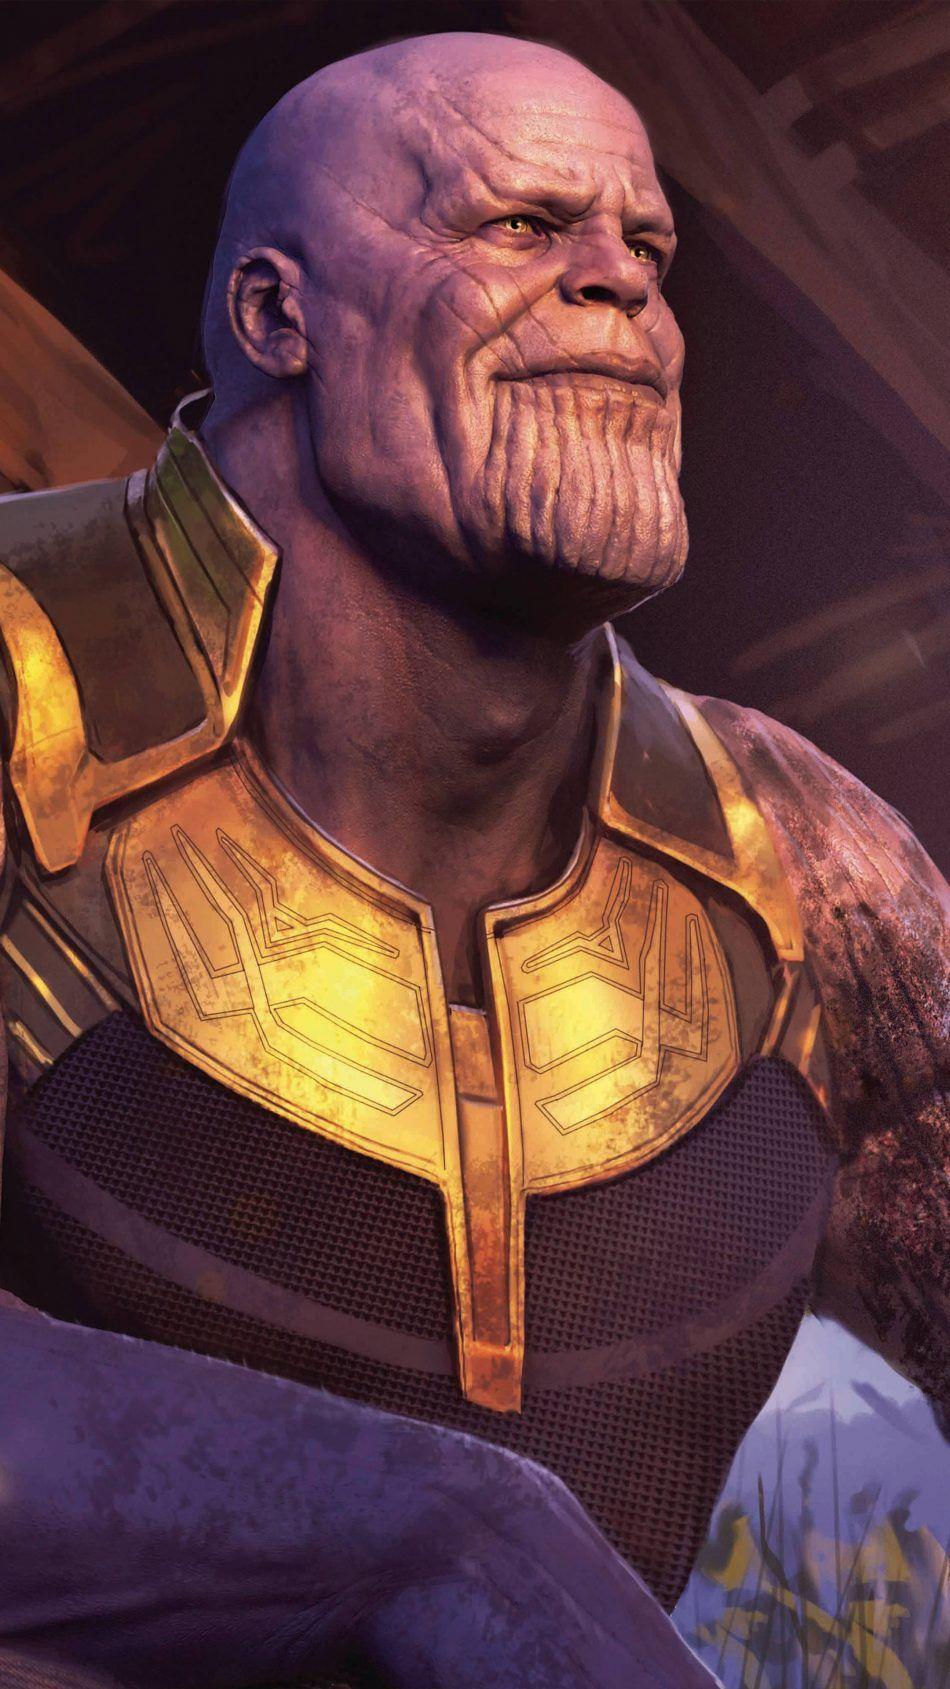 Thanos In Avengers Endgame. Avengers, Mobile wallpaper, Uhd wallpaper